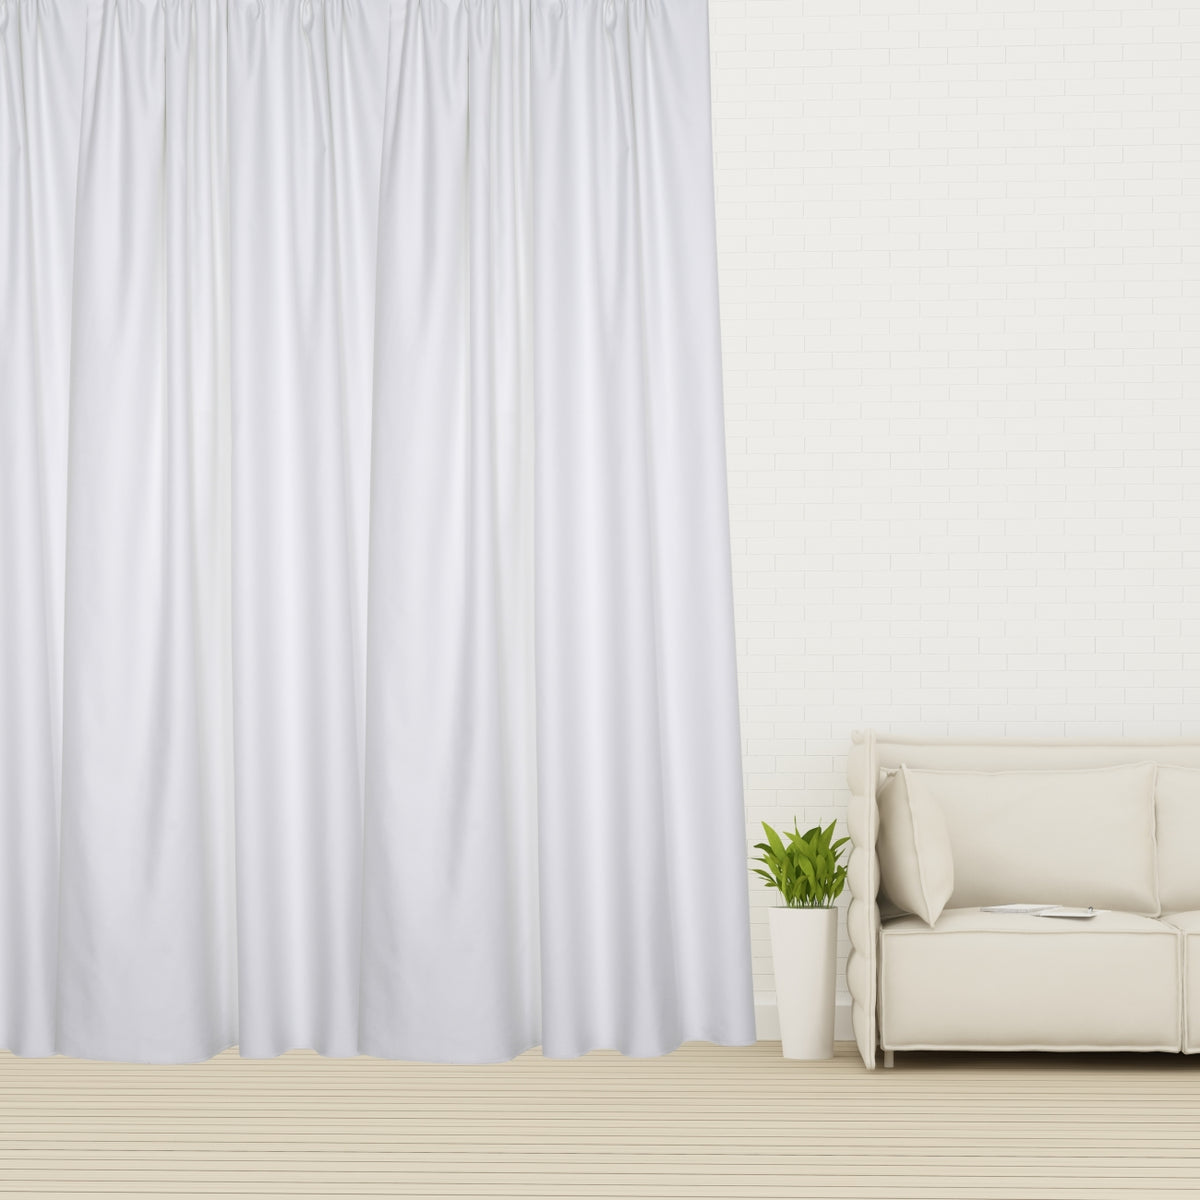 Night curtain white soft